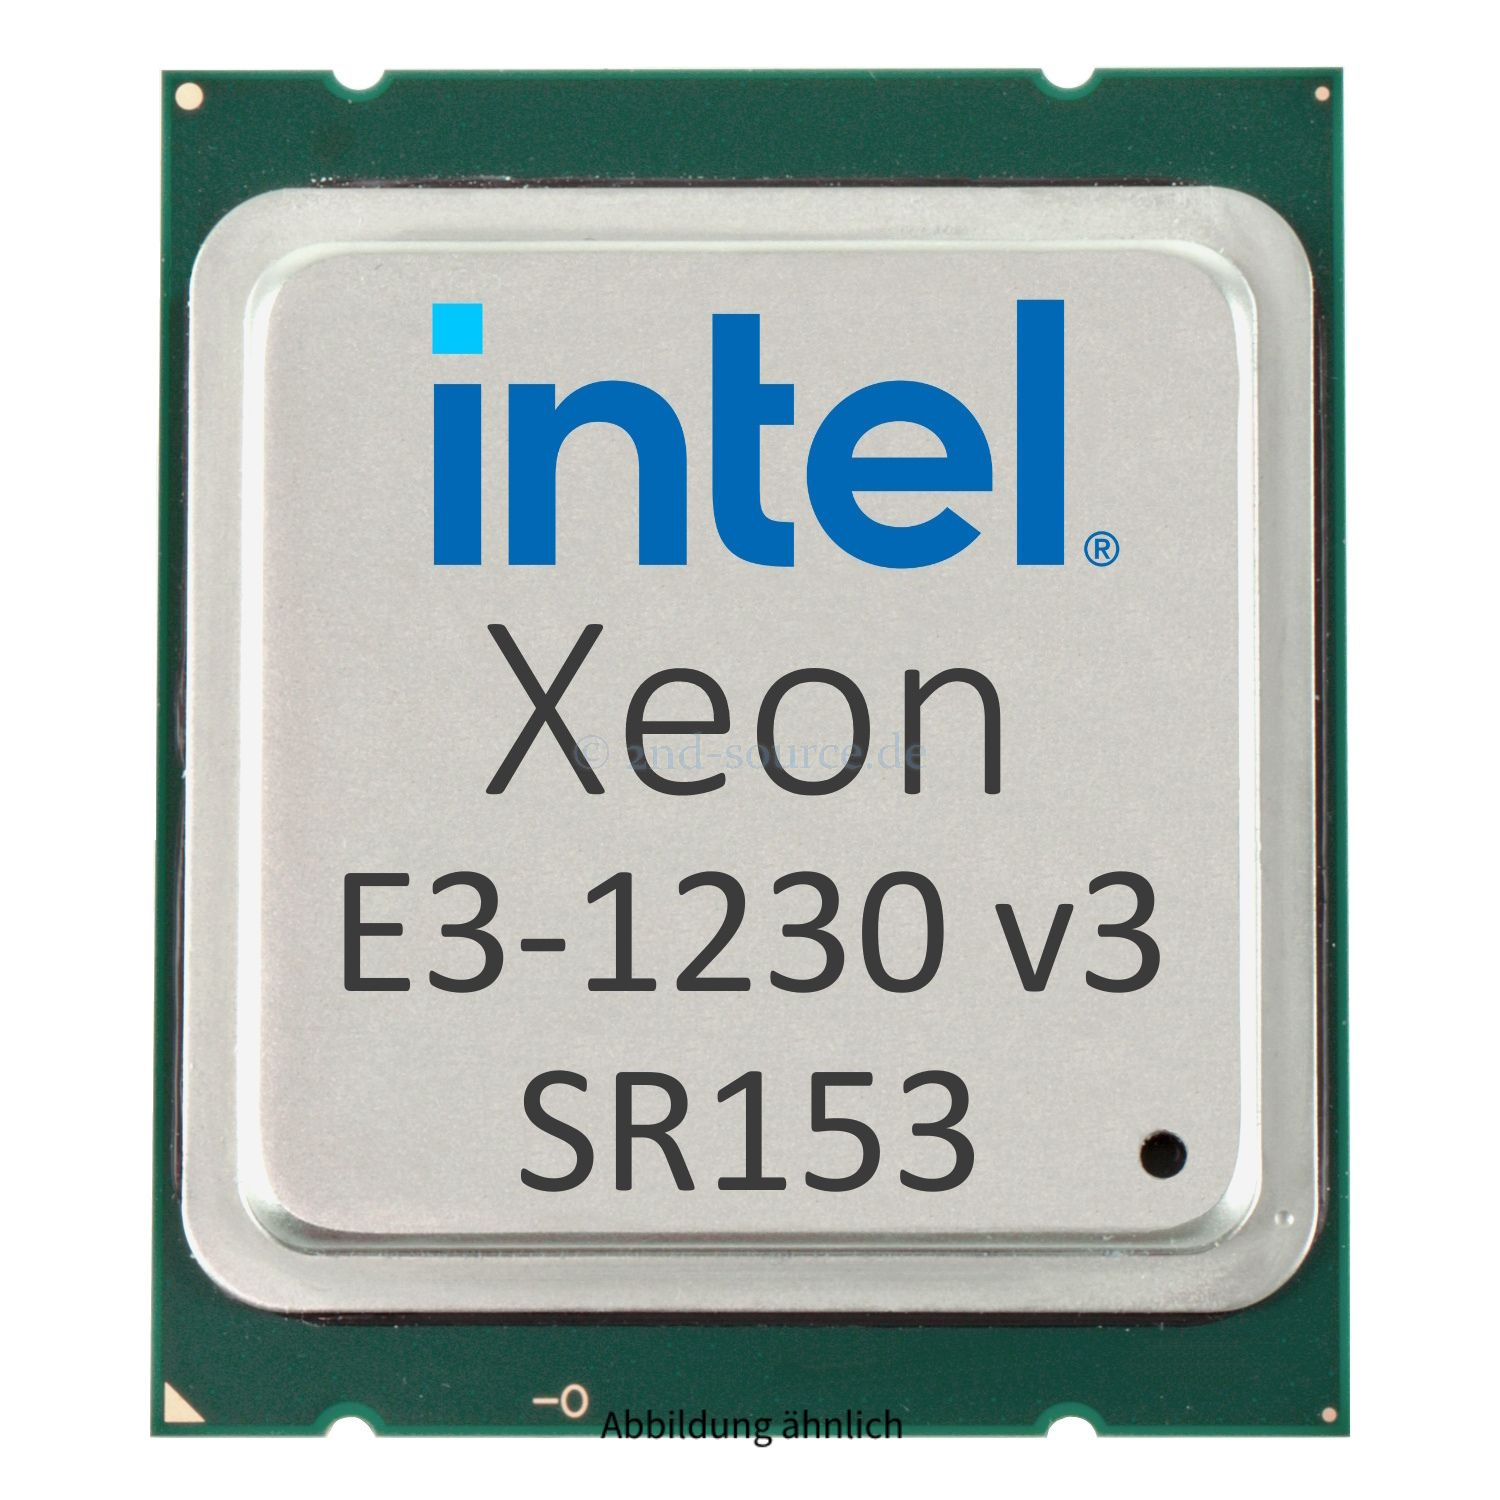 Intel Xeon E3-1230 v3 3.33GHz 8MB 4-Core CPU 80W SR153 CM8064601467202